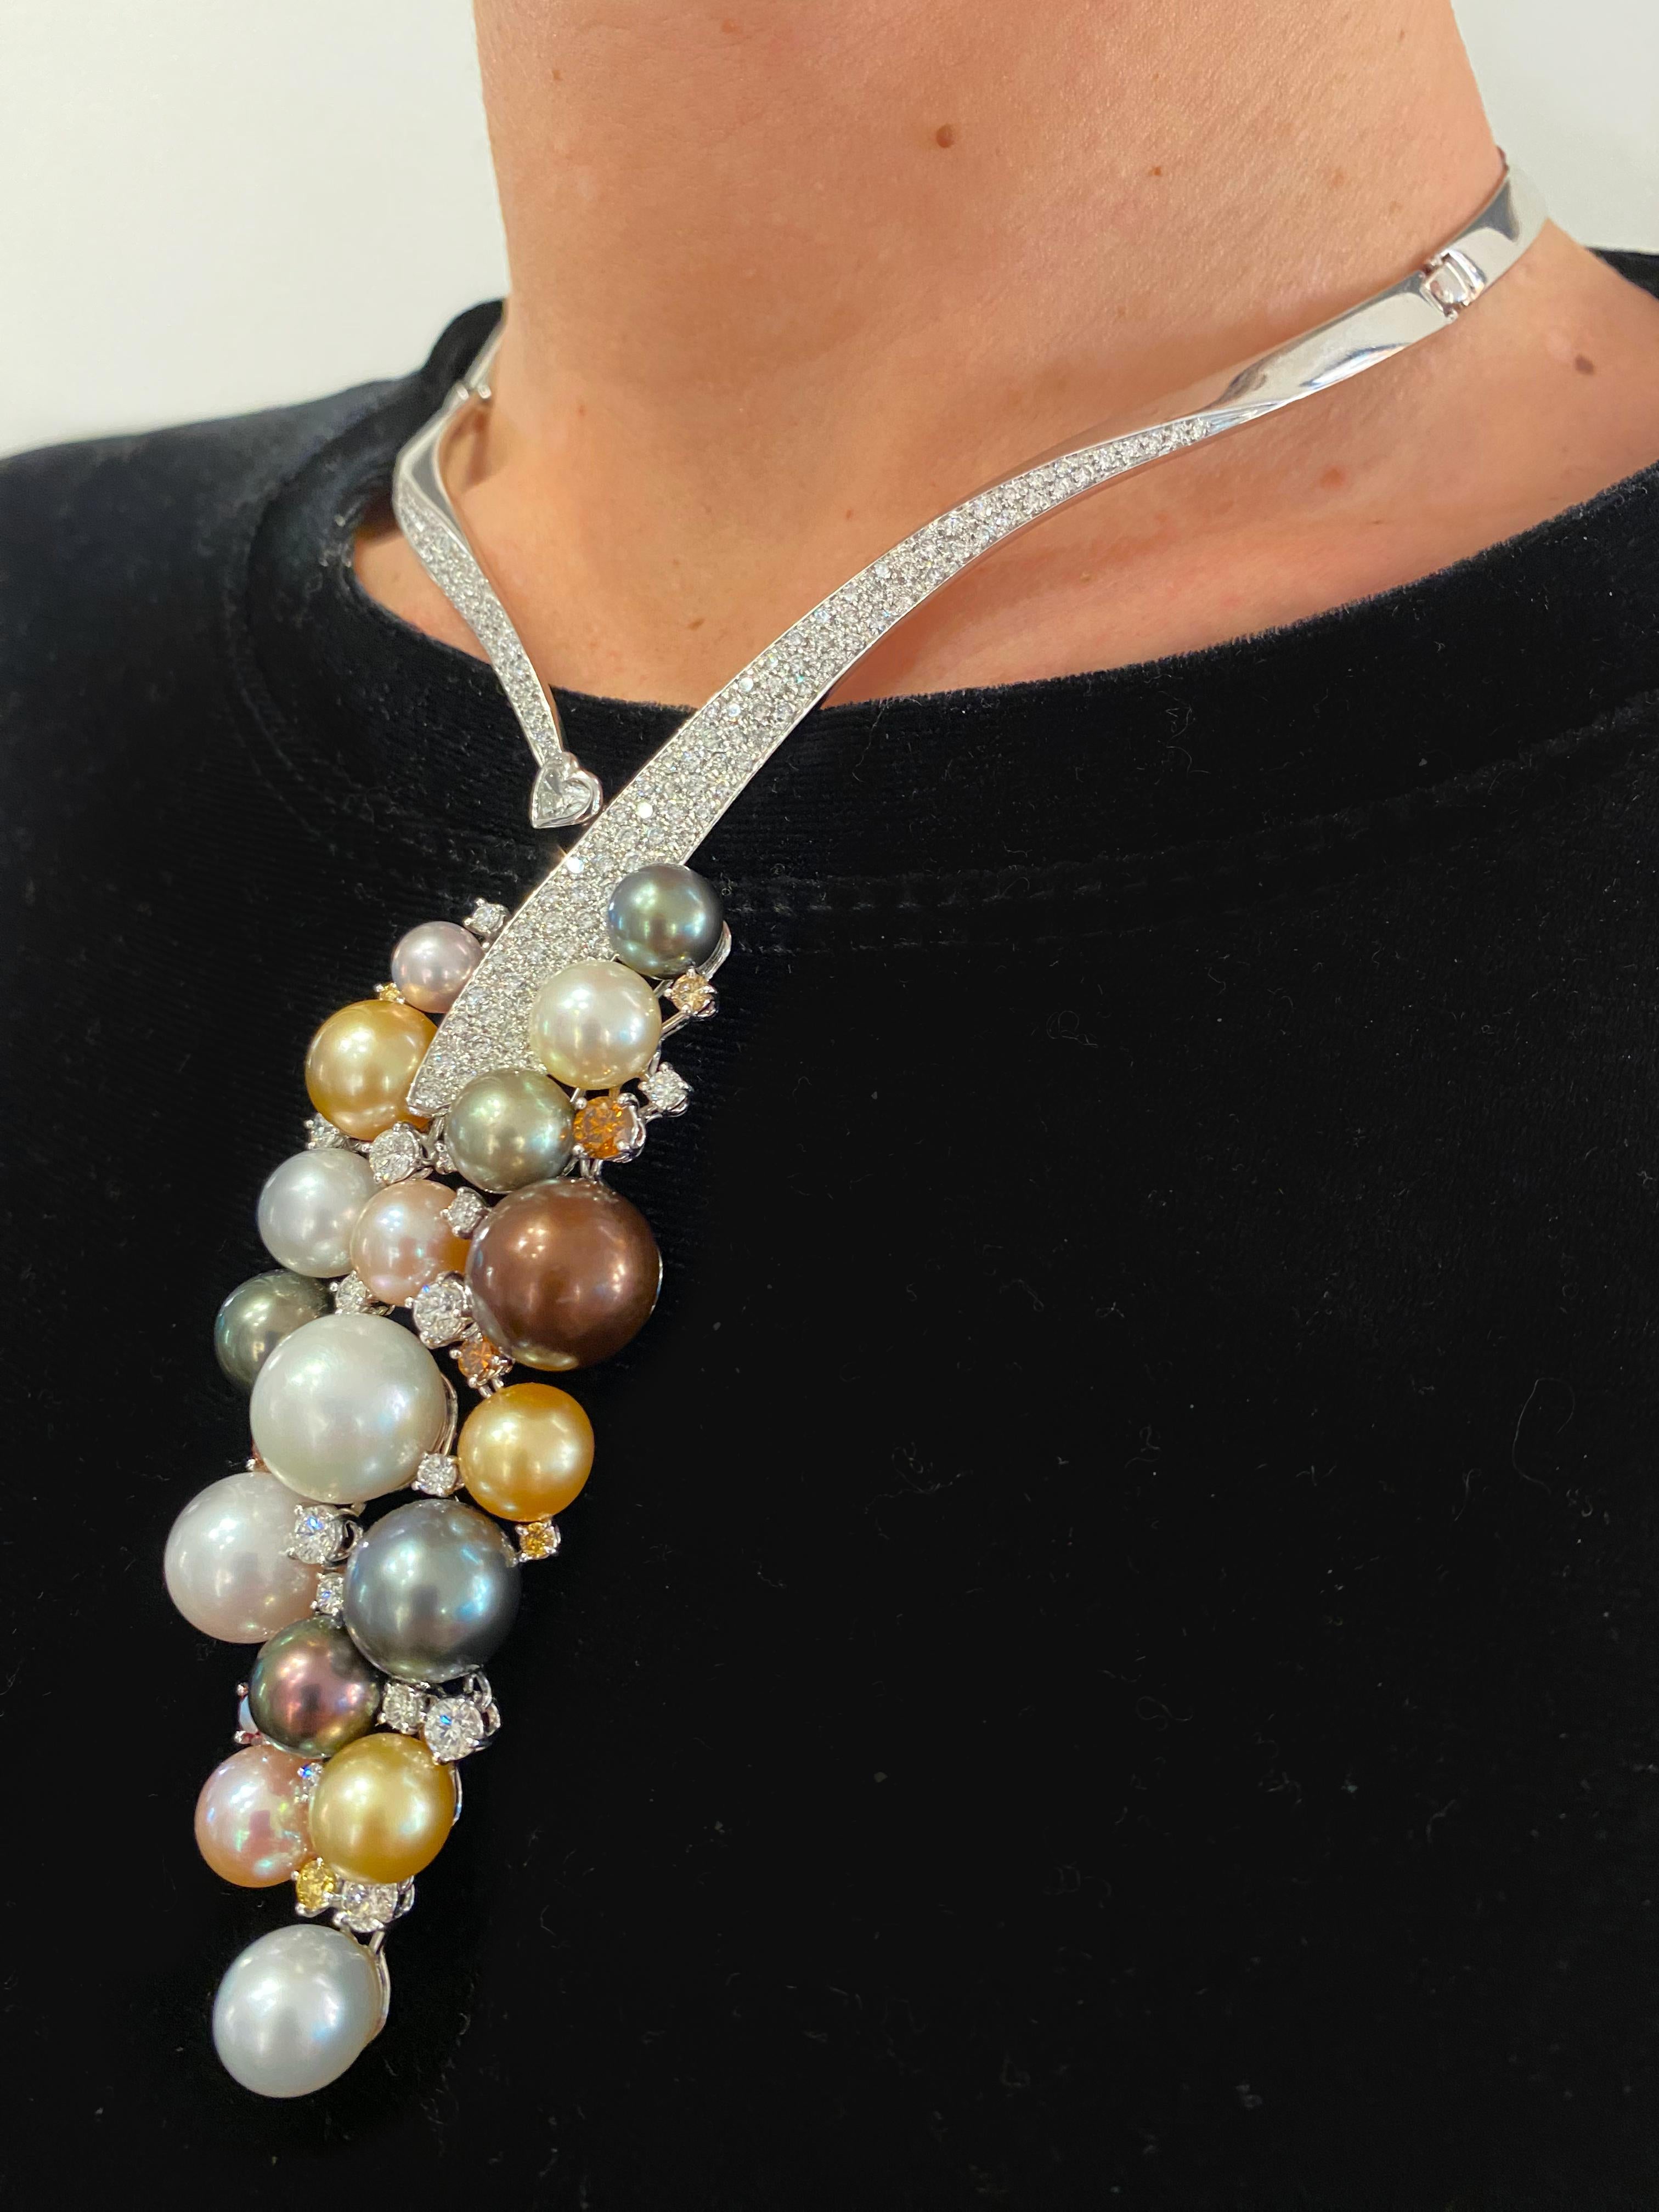 Wir präsentieren die Polynesian Sunset Necklace des renommierten italienischen Juweliers Scavia. Dieses exquisite Stück kombiniert kunstvoll exotische Perlen in Schokolade, Gold, Silber und Rosa und fängt die strahlenden Farben eines polynesischen